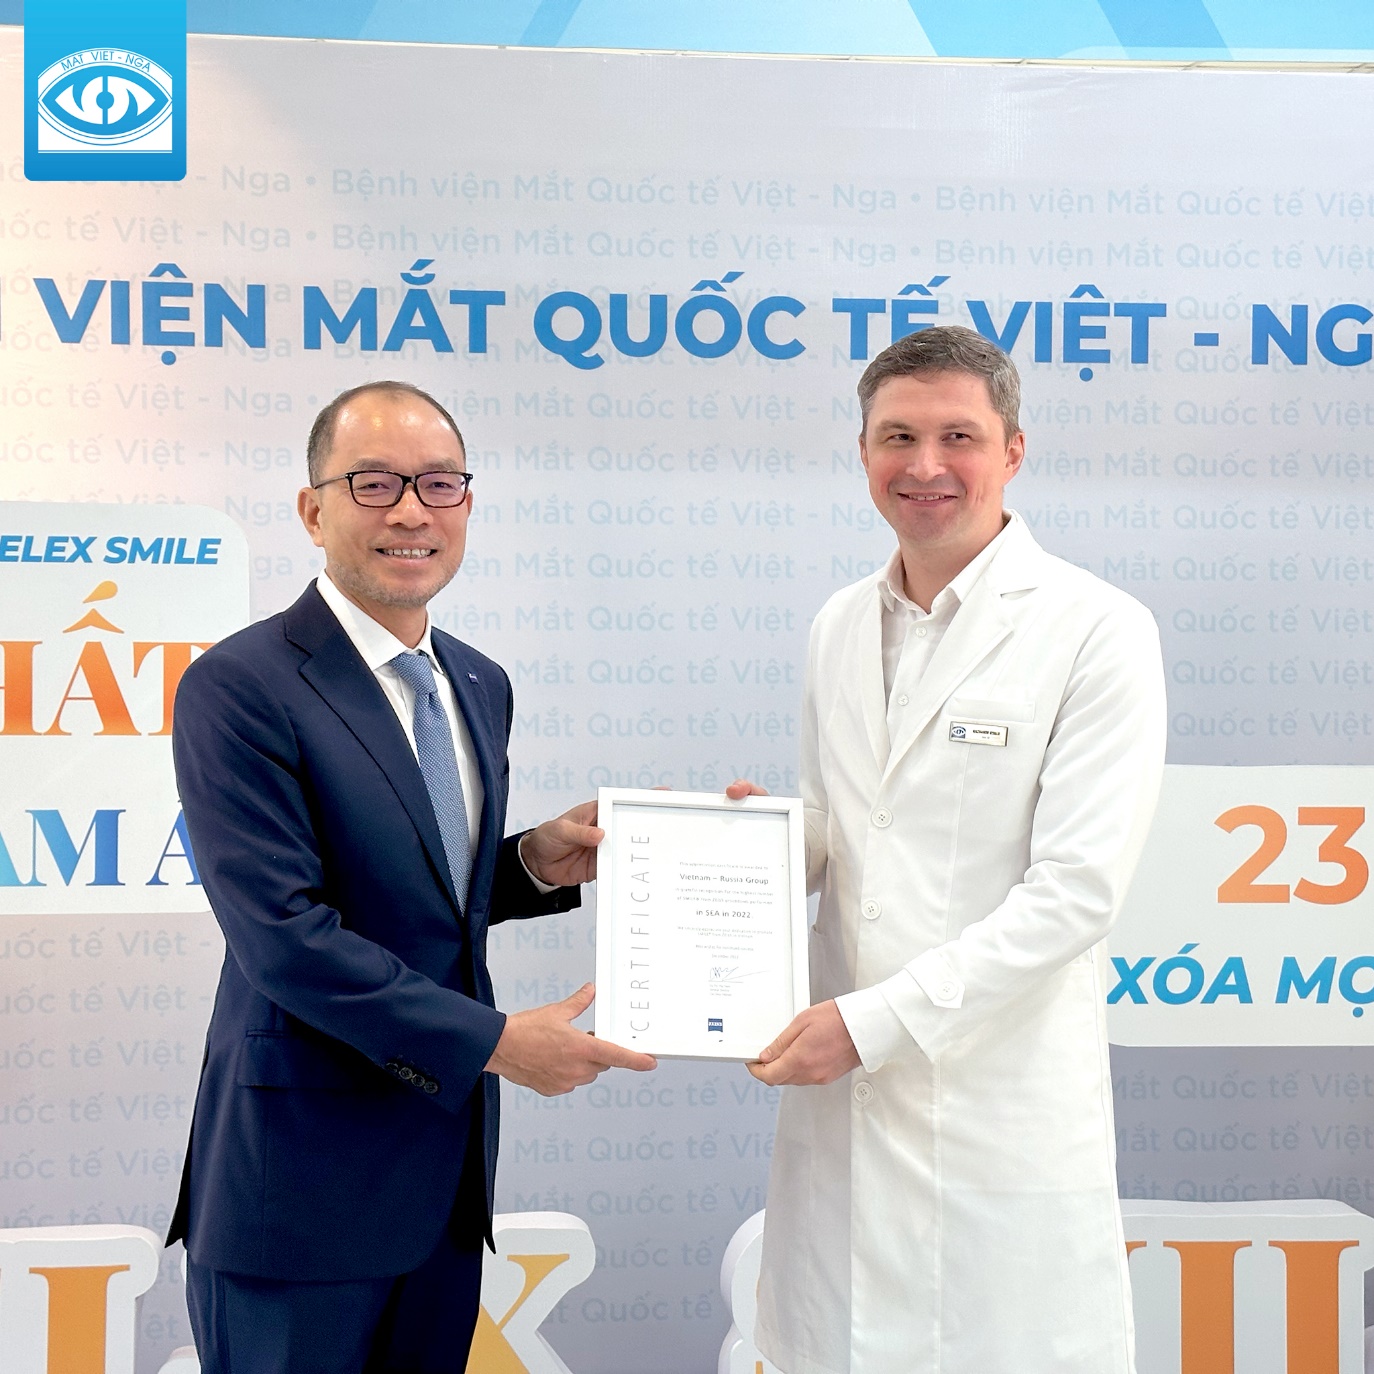 Bệnh Viện Mắt Quốc Tế Việt - Nga vinh dự nhận 4 giải thưởng thành tựu phẫu thuật khúc xạ của khu vực Đông Nam Á - Ảnh 3.